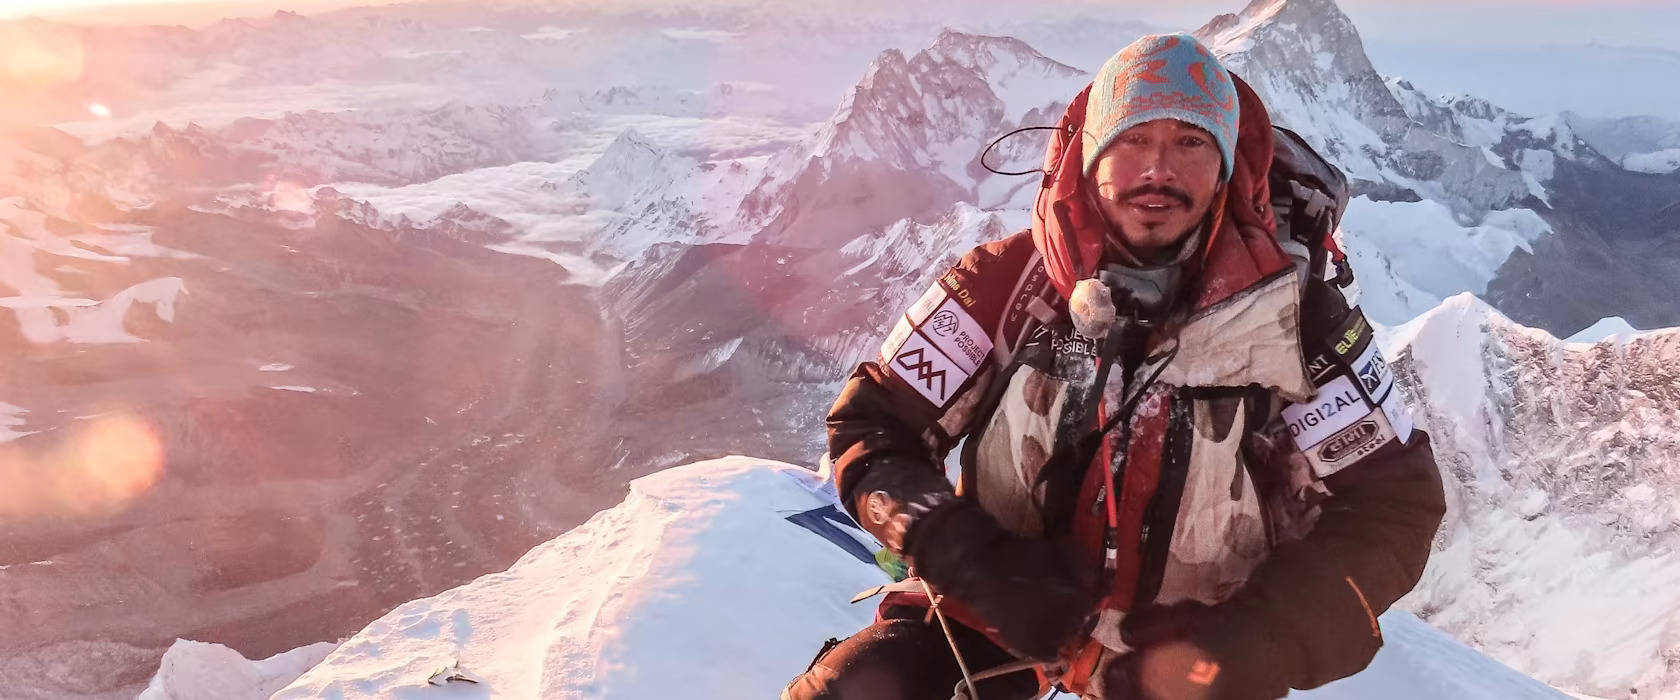 6个月内登遍8000米以上高峰，他是怎样的超人?